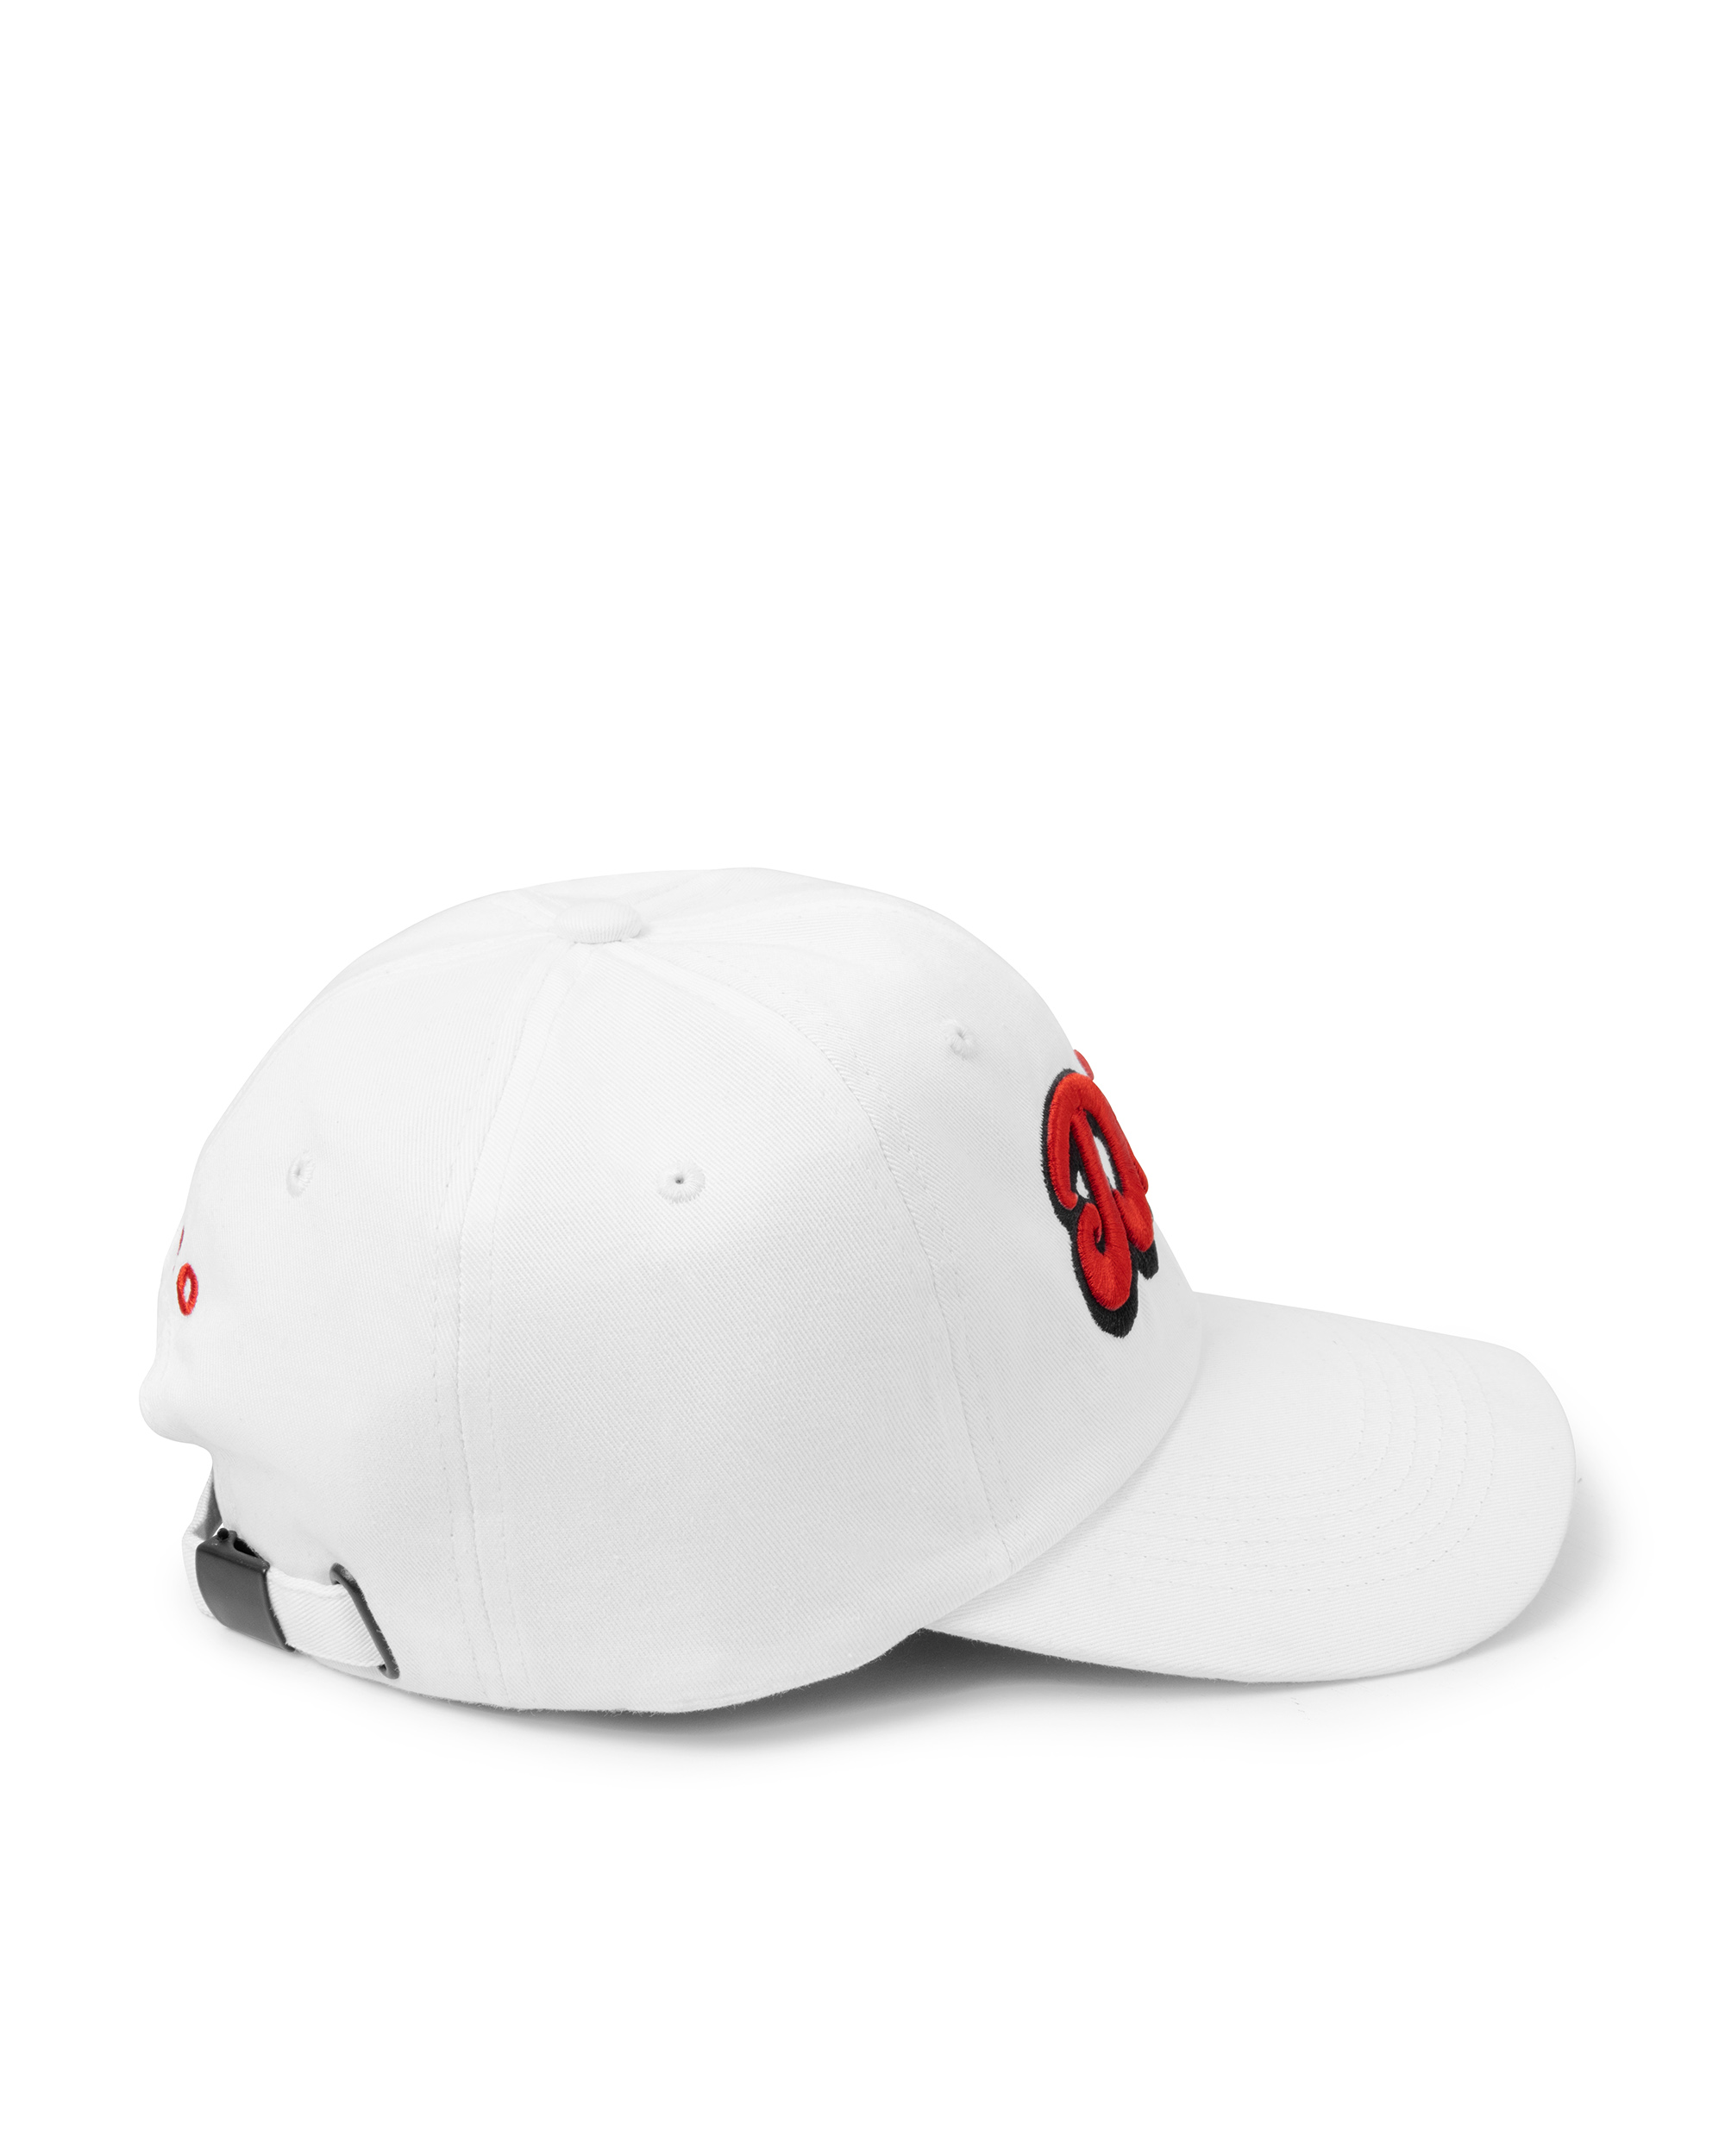 Dico Comfy Baseball Cap - White